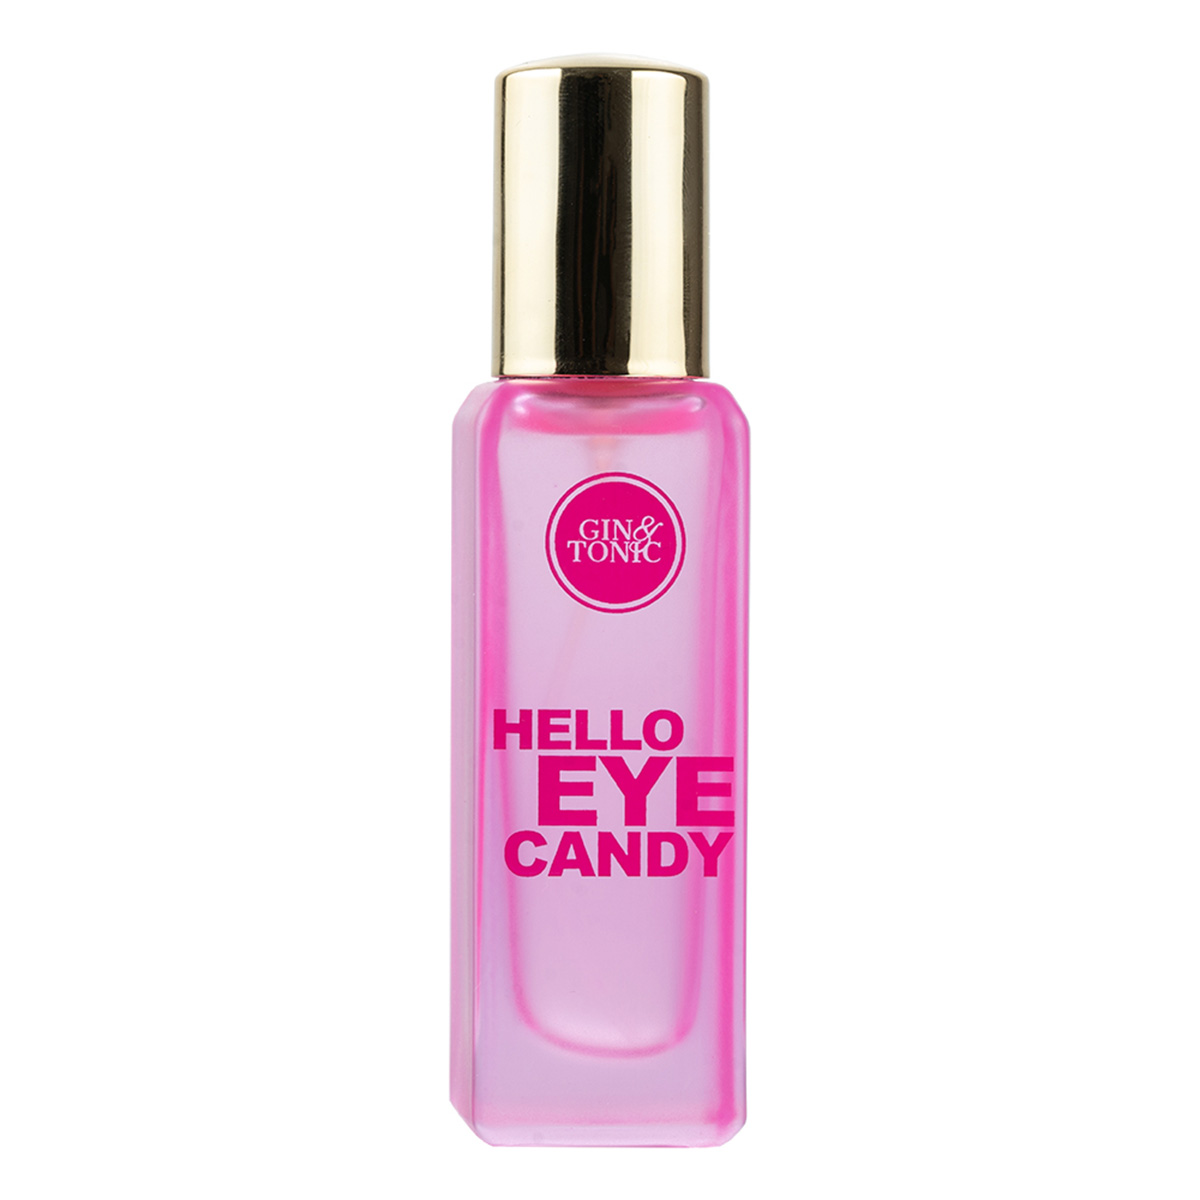 Perfume Lounge Gin & Tonic Hello Eye Candy Eau De Parfum, 20ml